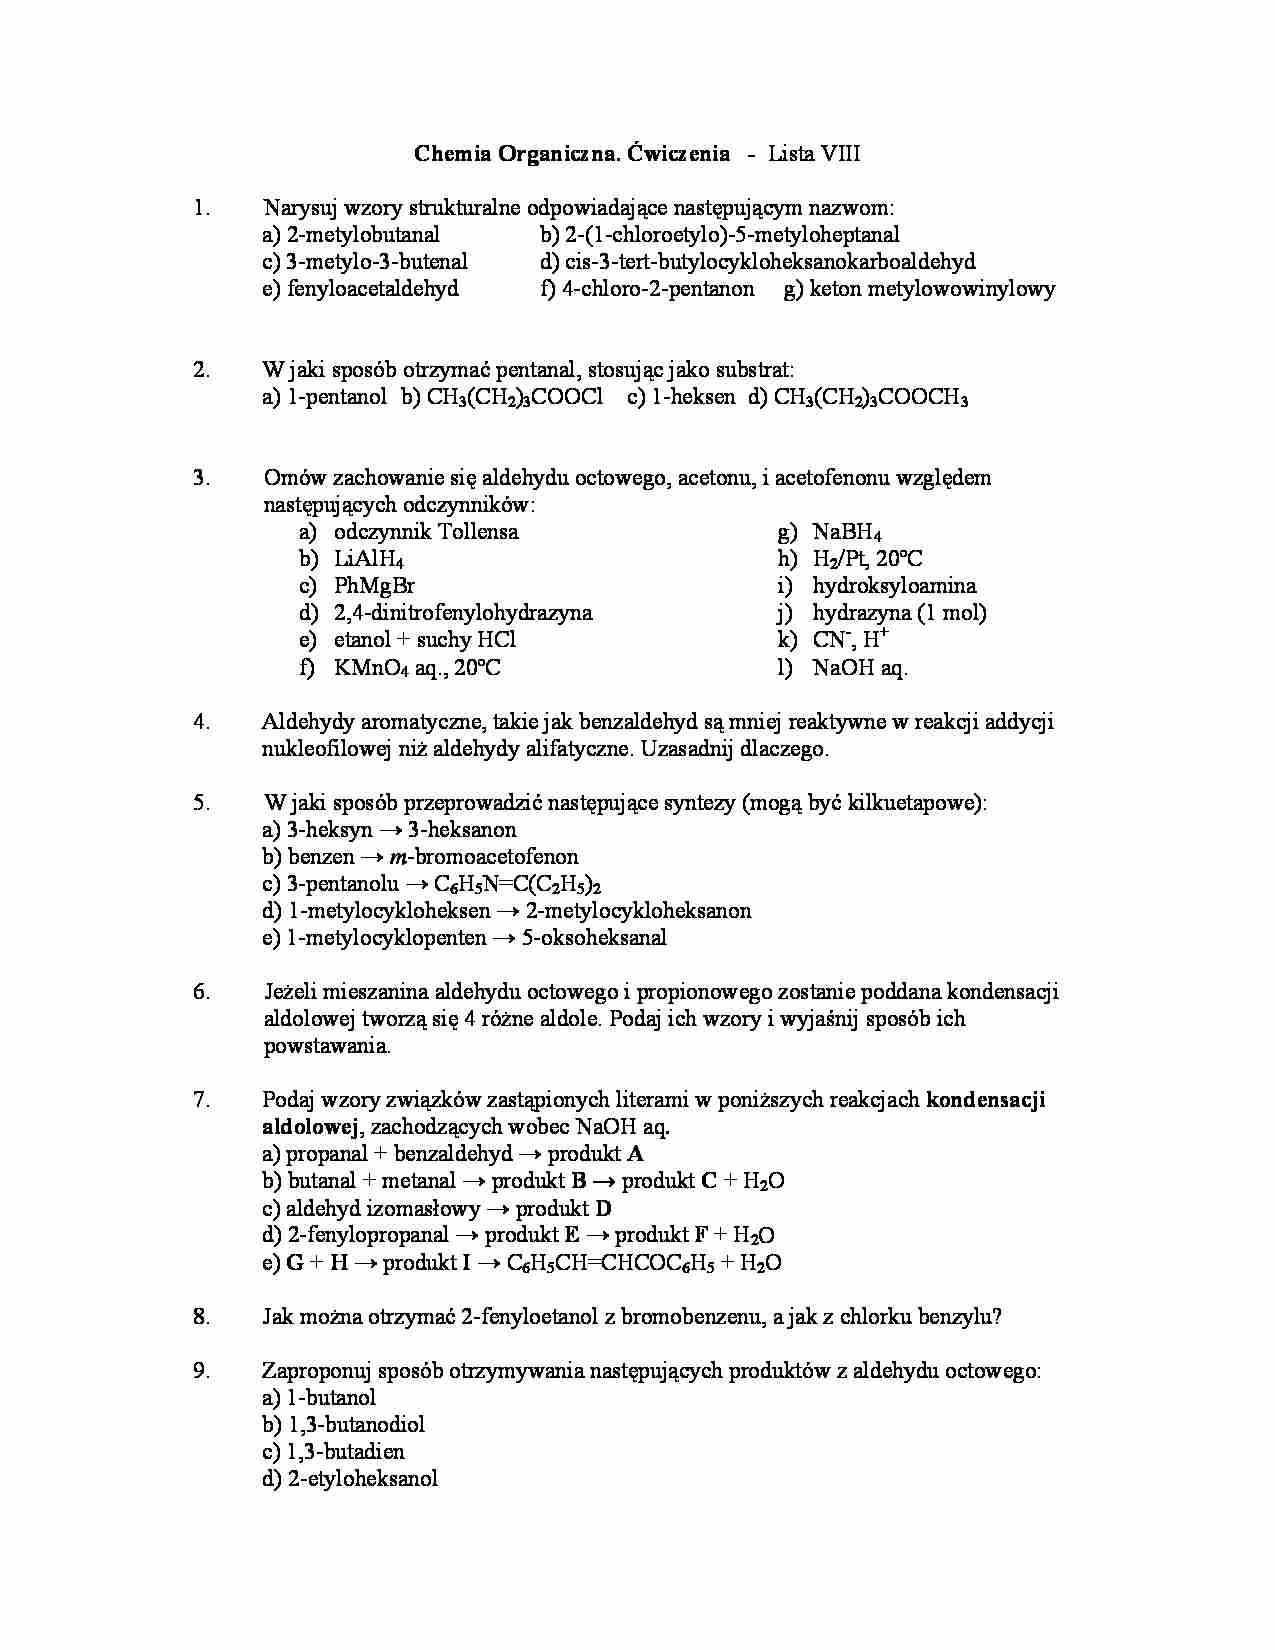 Chemia organiczna - ćwiczenia, lista VII - strona 1